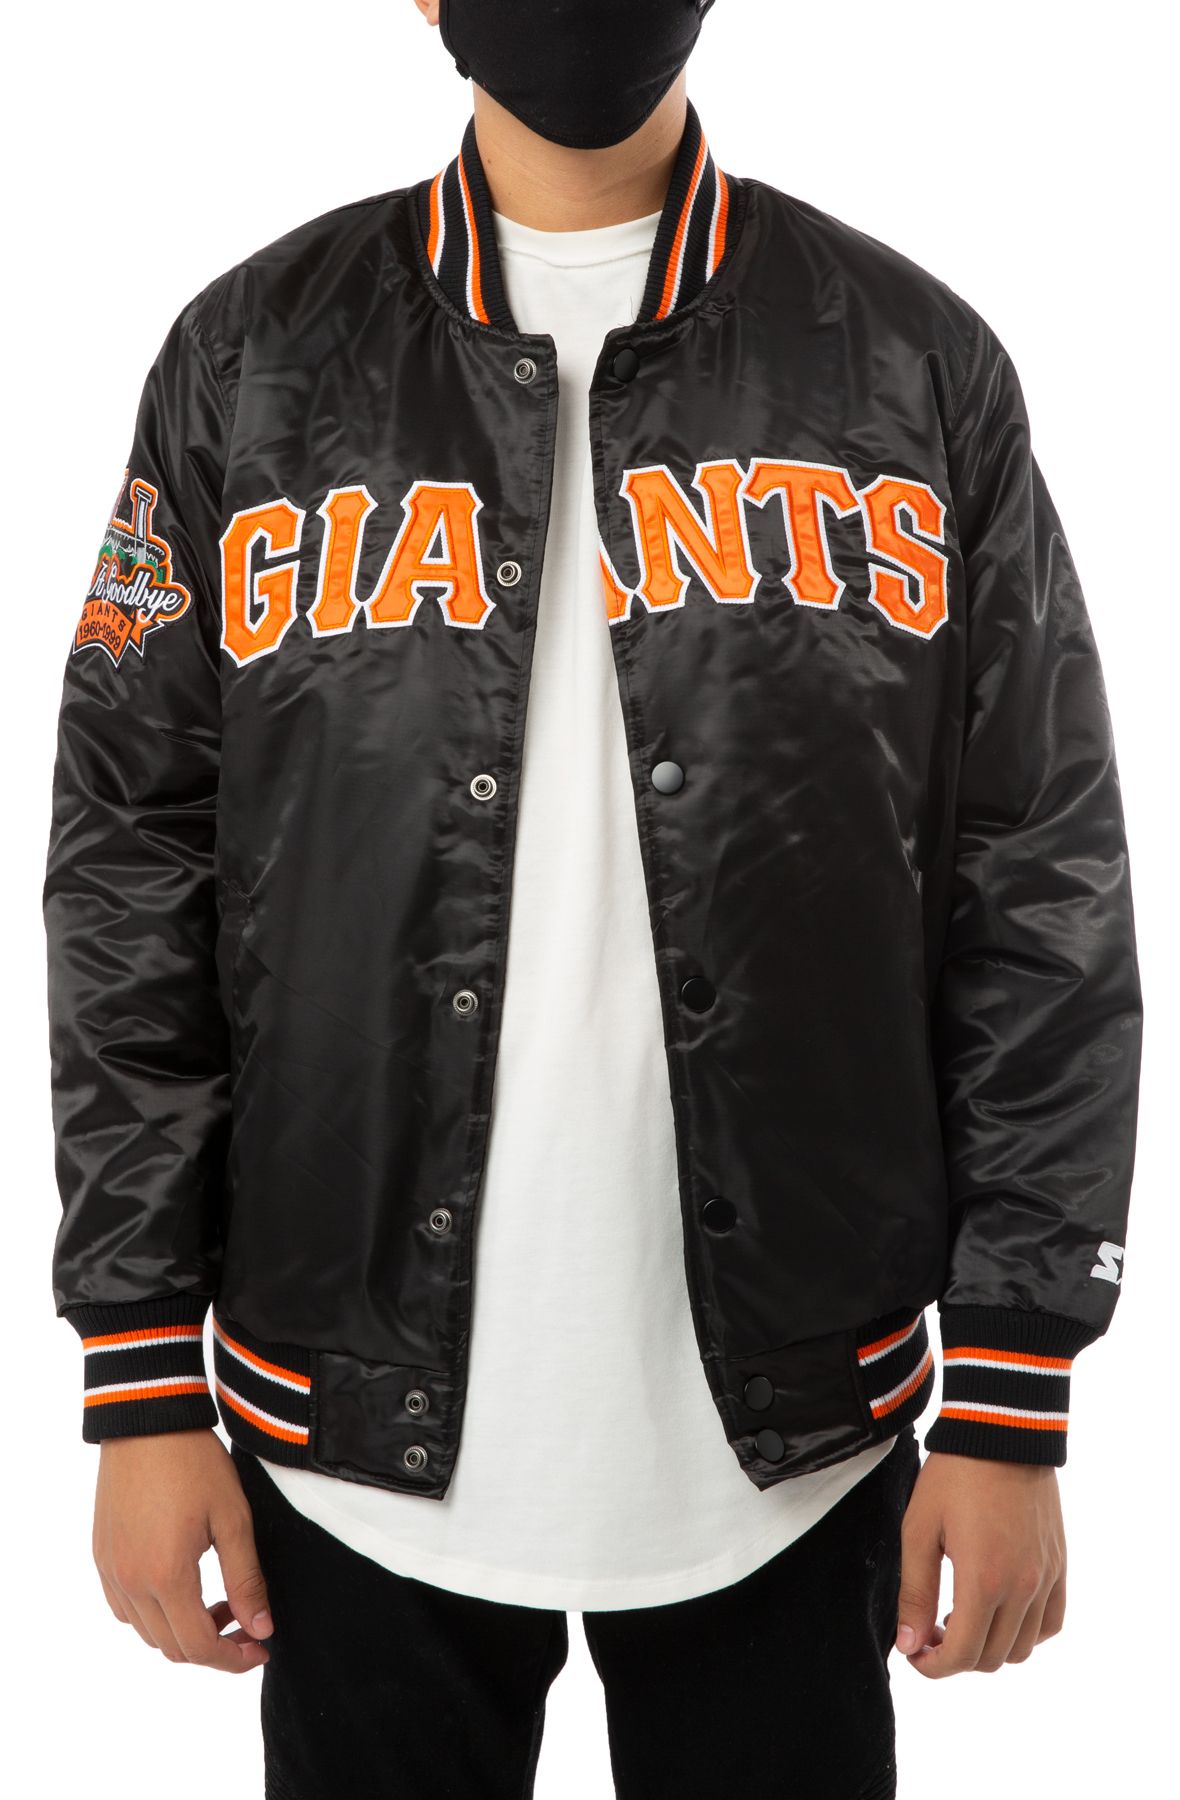 sf giants jacket